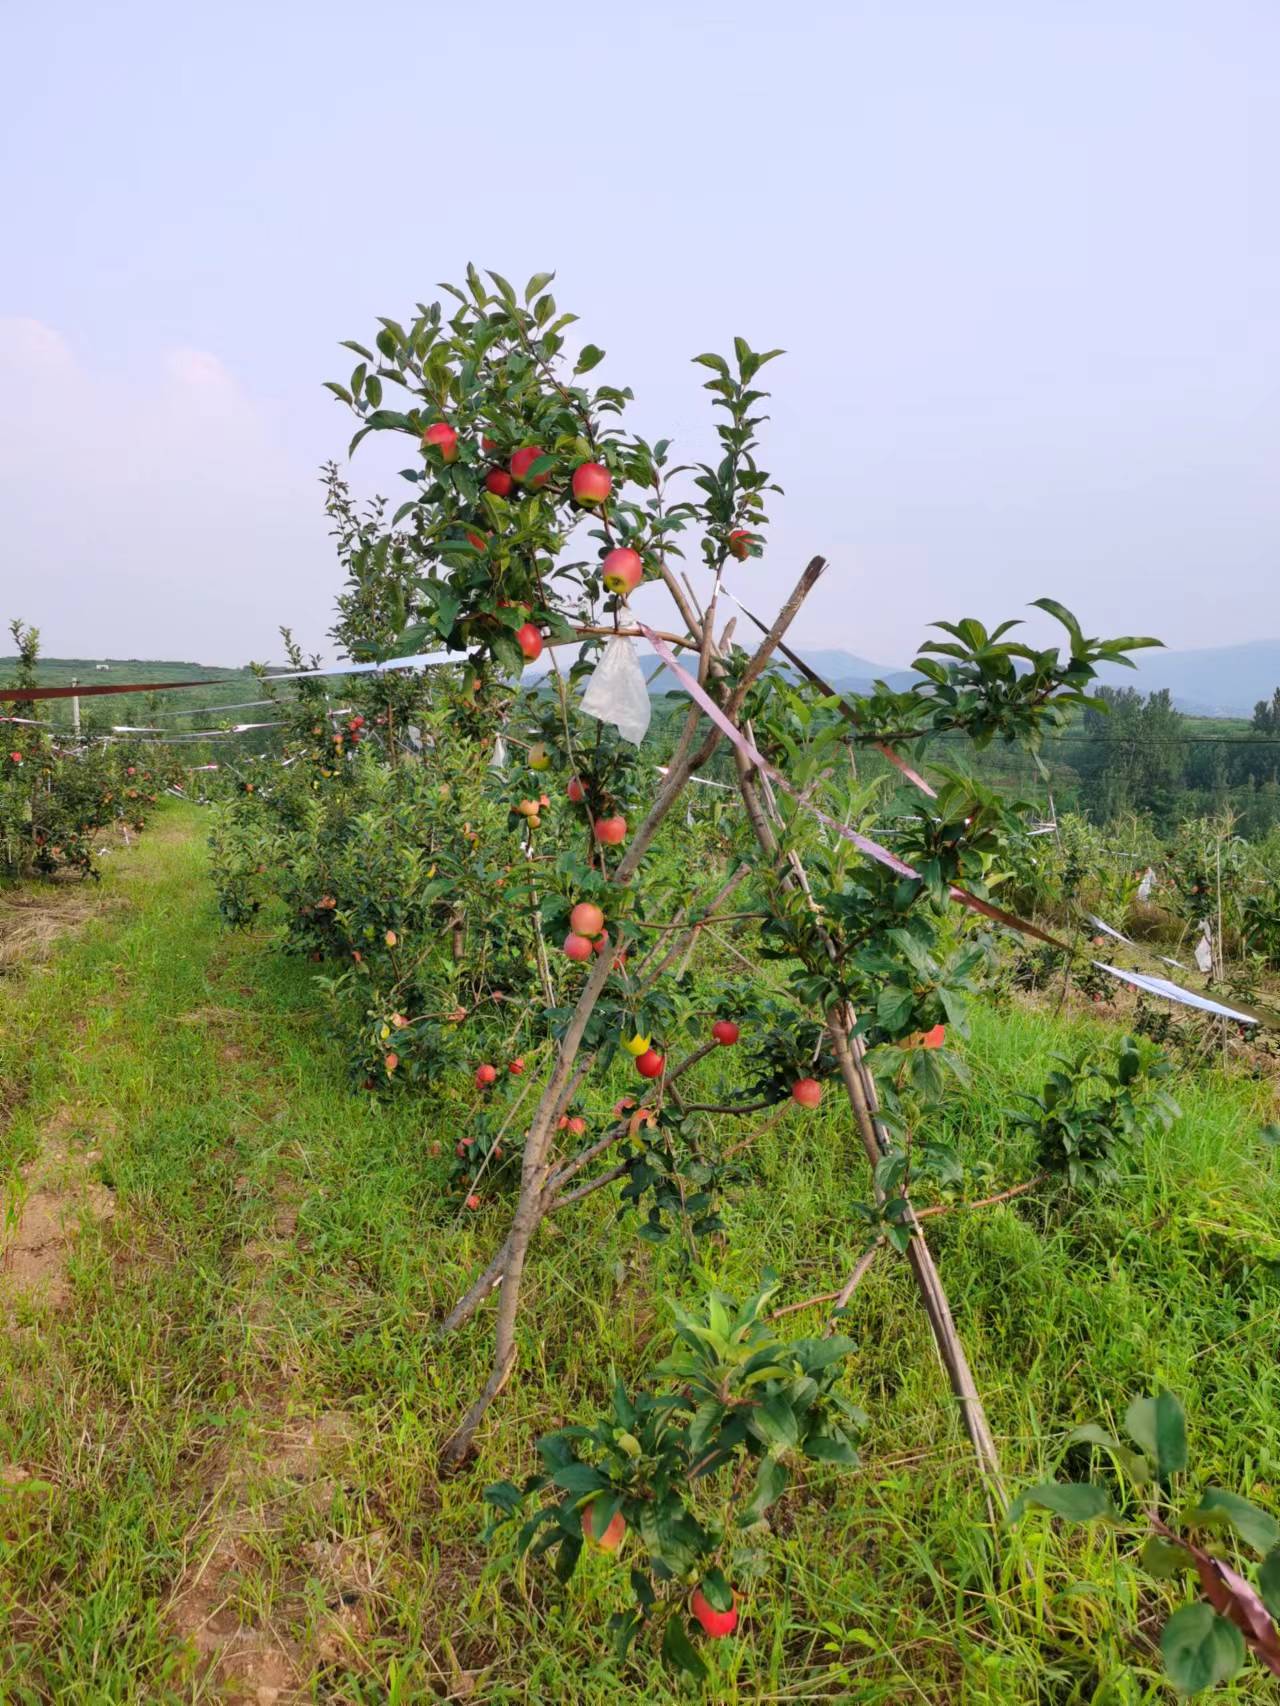 新疆野苹果砧木华硕苹果树苗,8公分苗